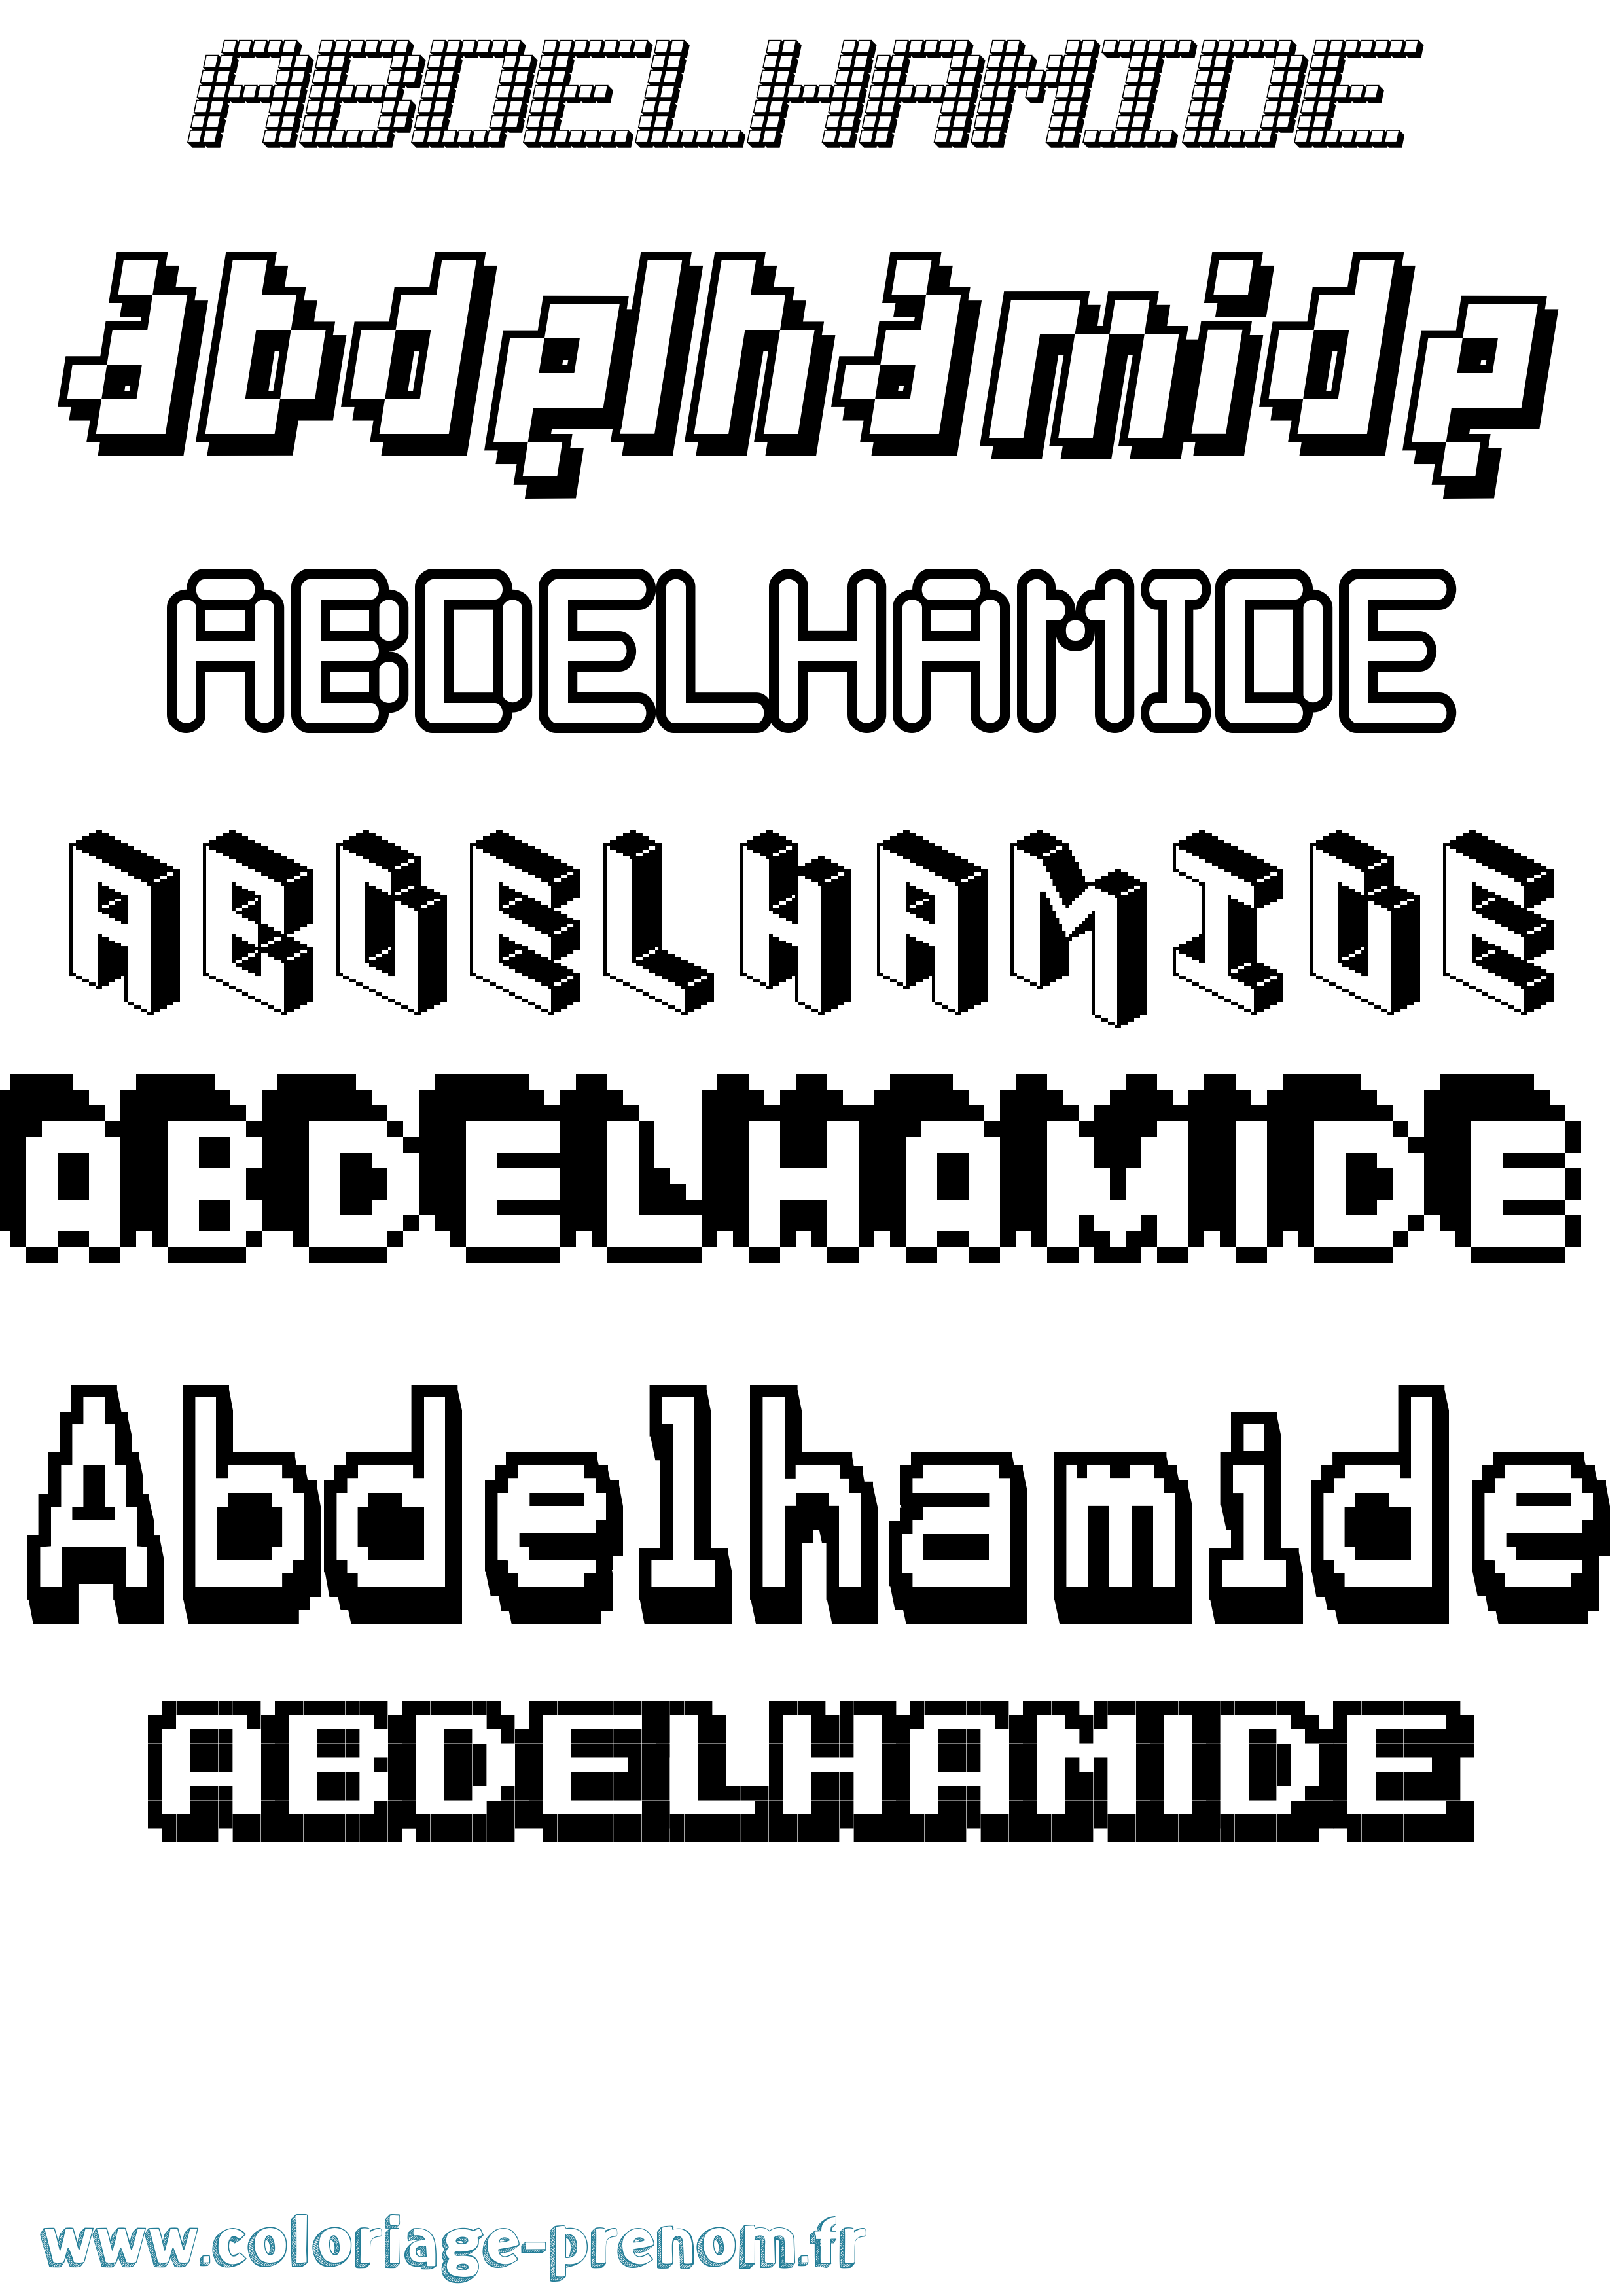 Coloriage prénom Abdelhamide Pixel